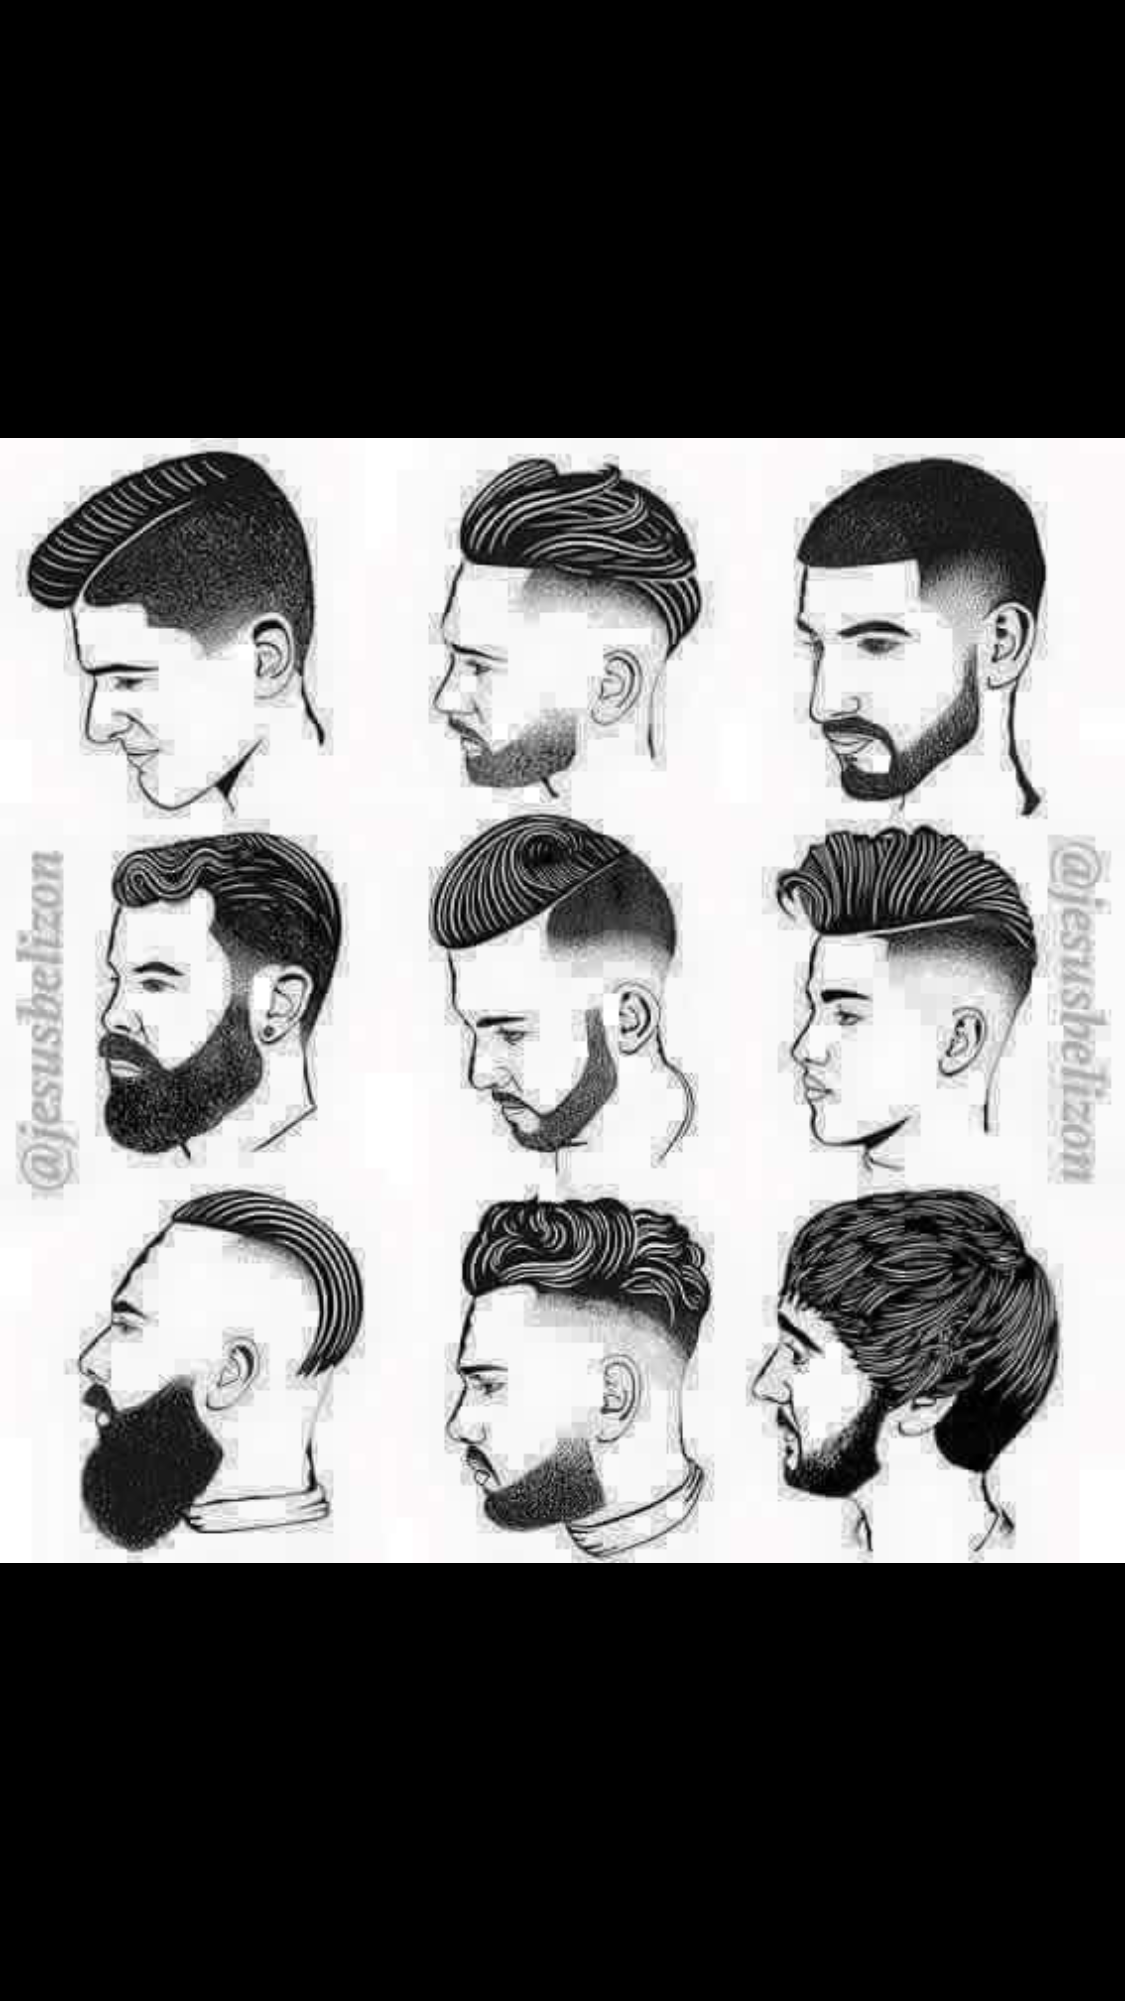 髮型作品參考:Men hair